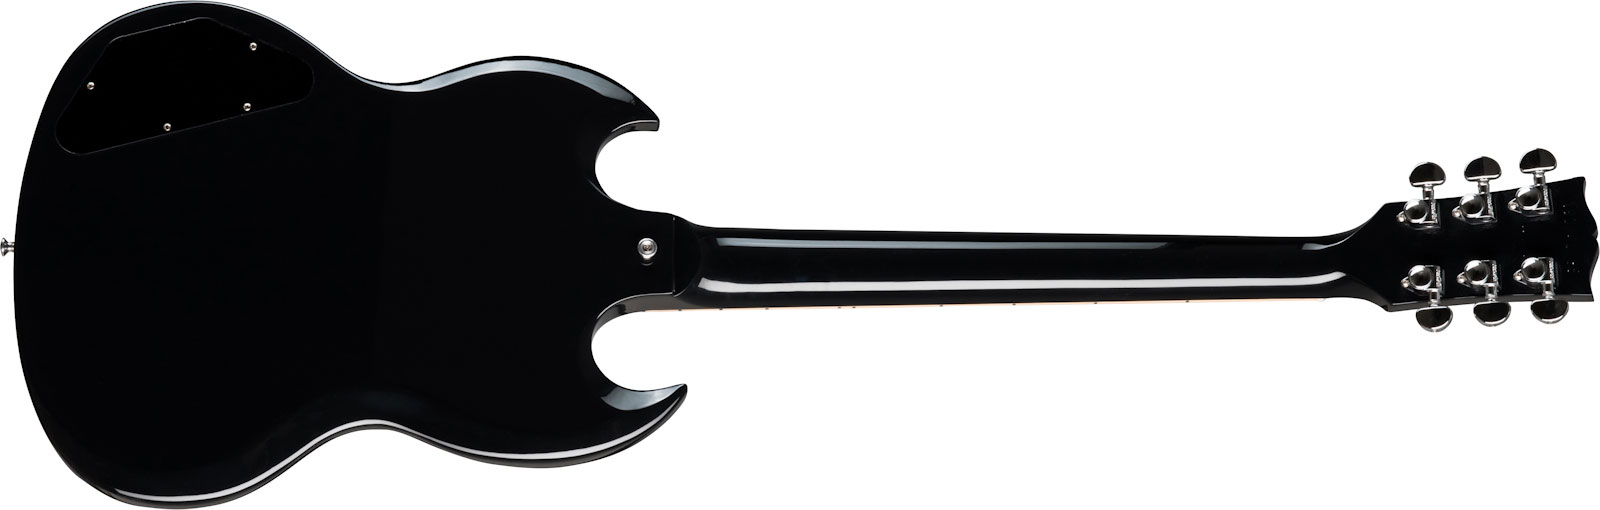 Gibson Sg Standard Lh Gaucher 2h Ht Rw - Ebony - Guitarra electrica para zurdos - Variation 1